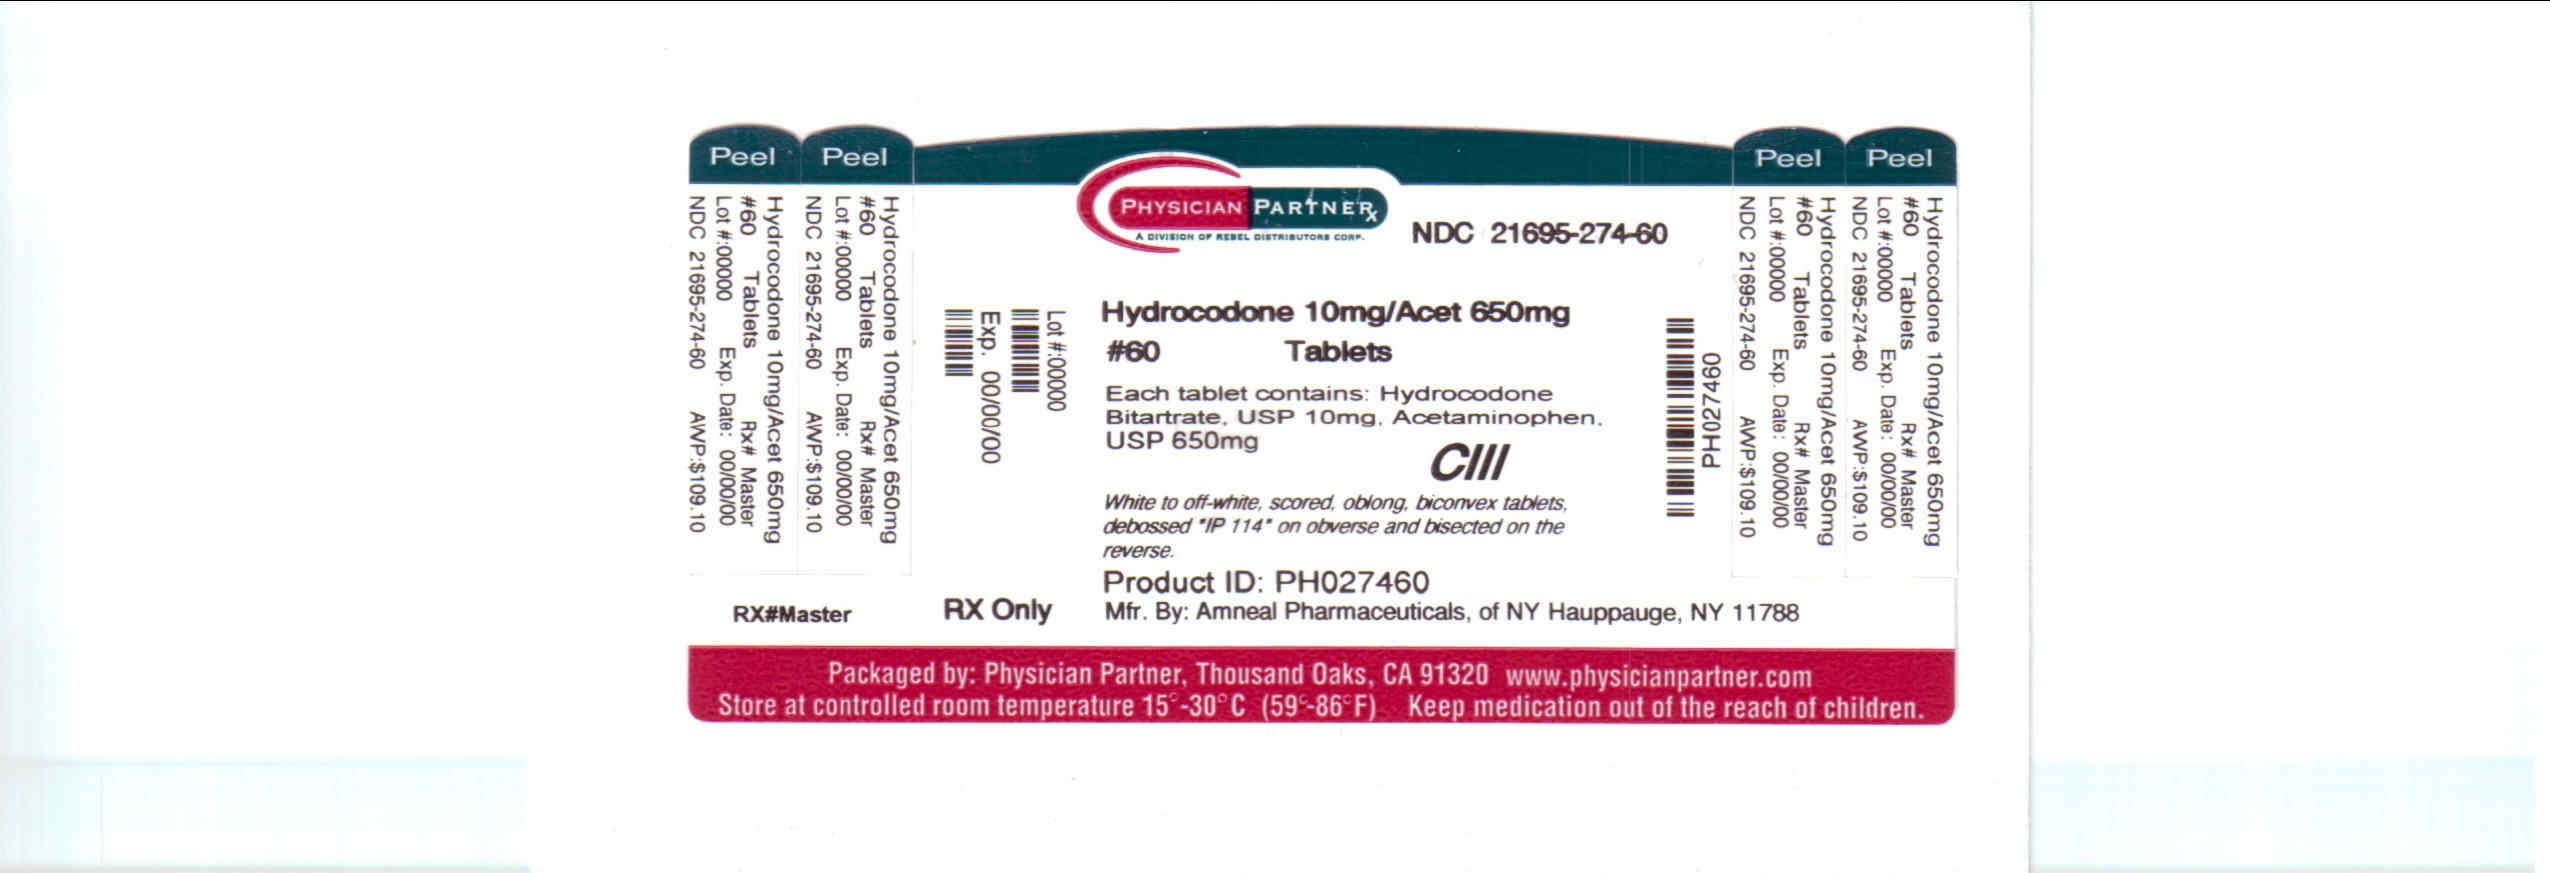 Hydrocodone 10mg/Acet 650mg